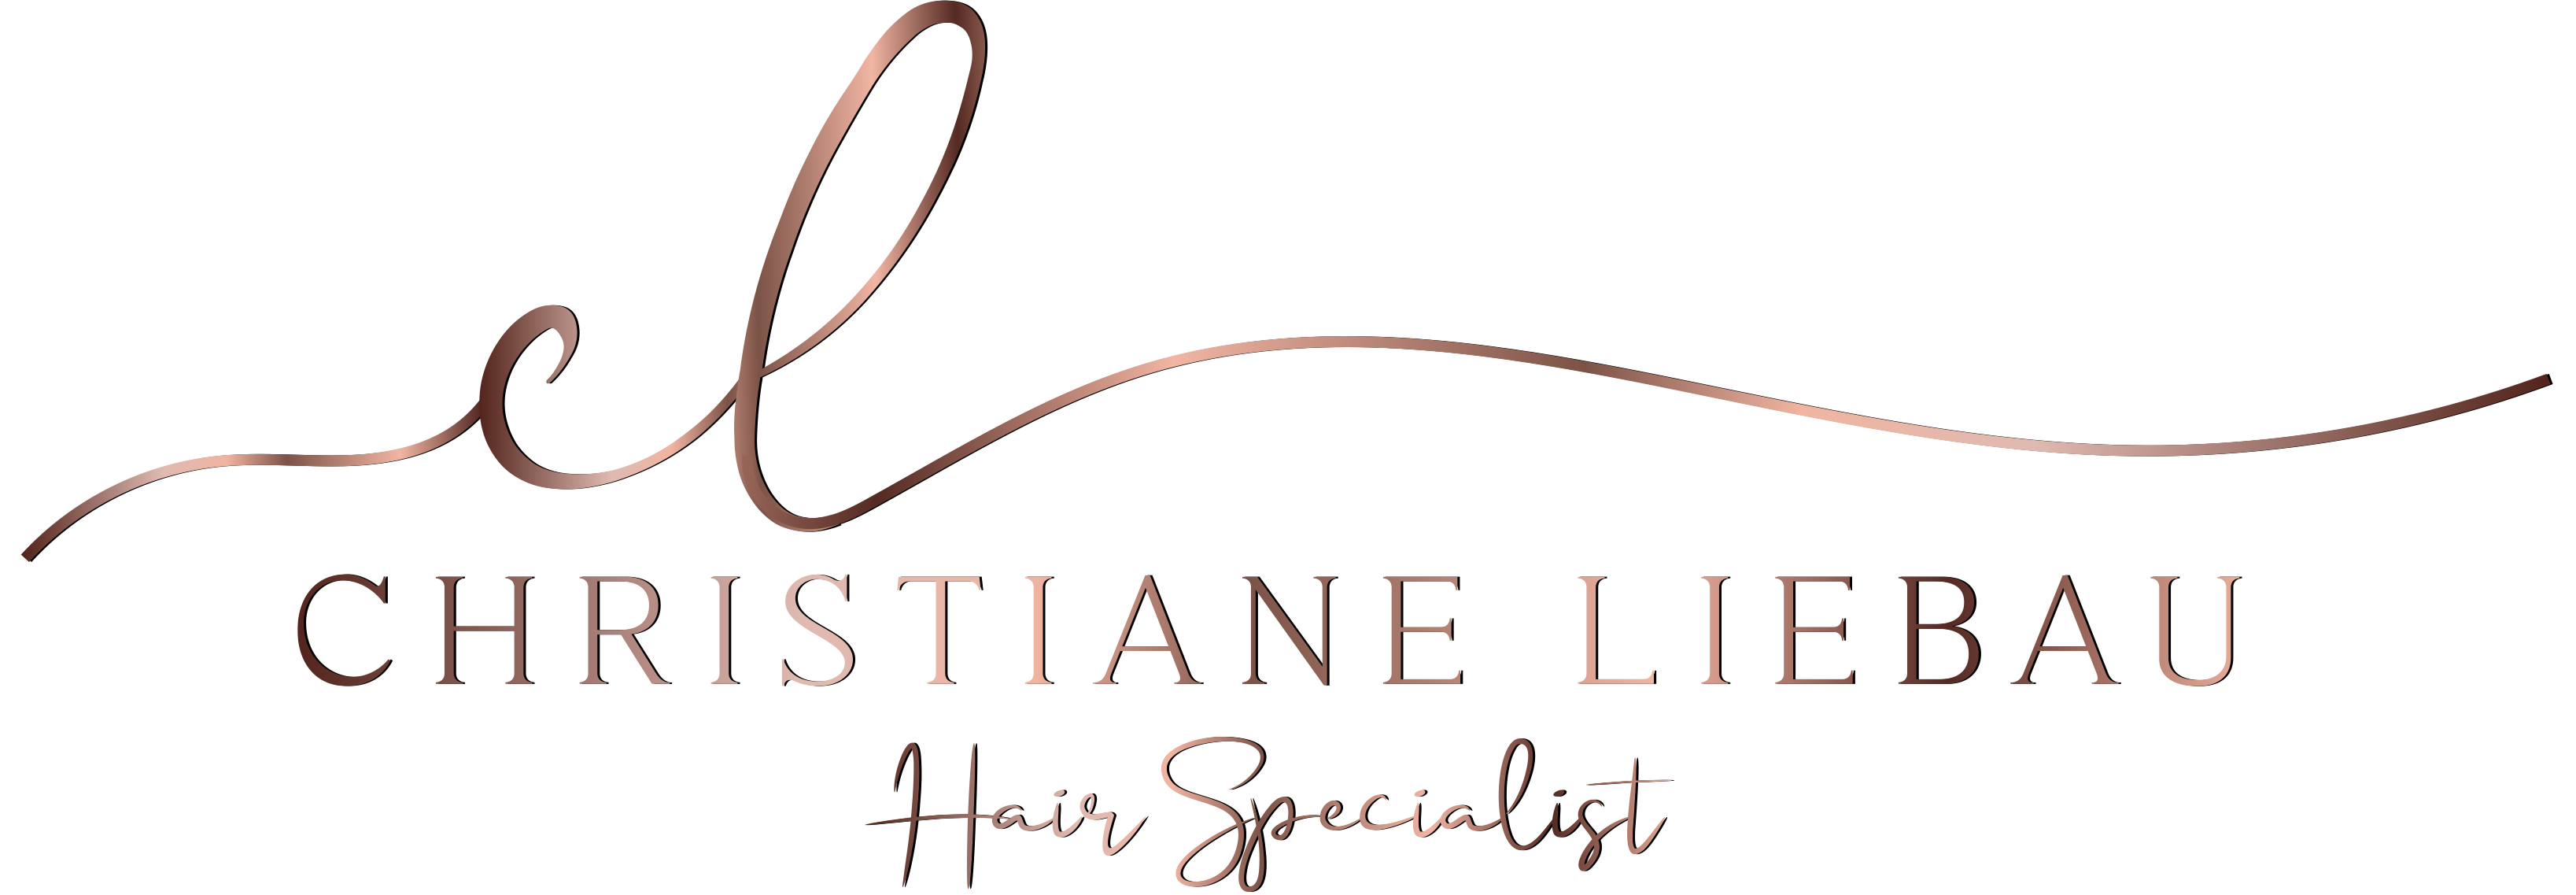 Christiane Liebau – Hair Specialist